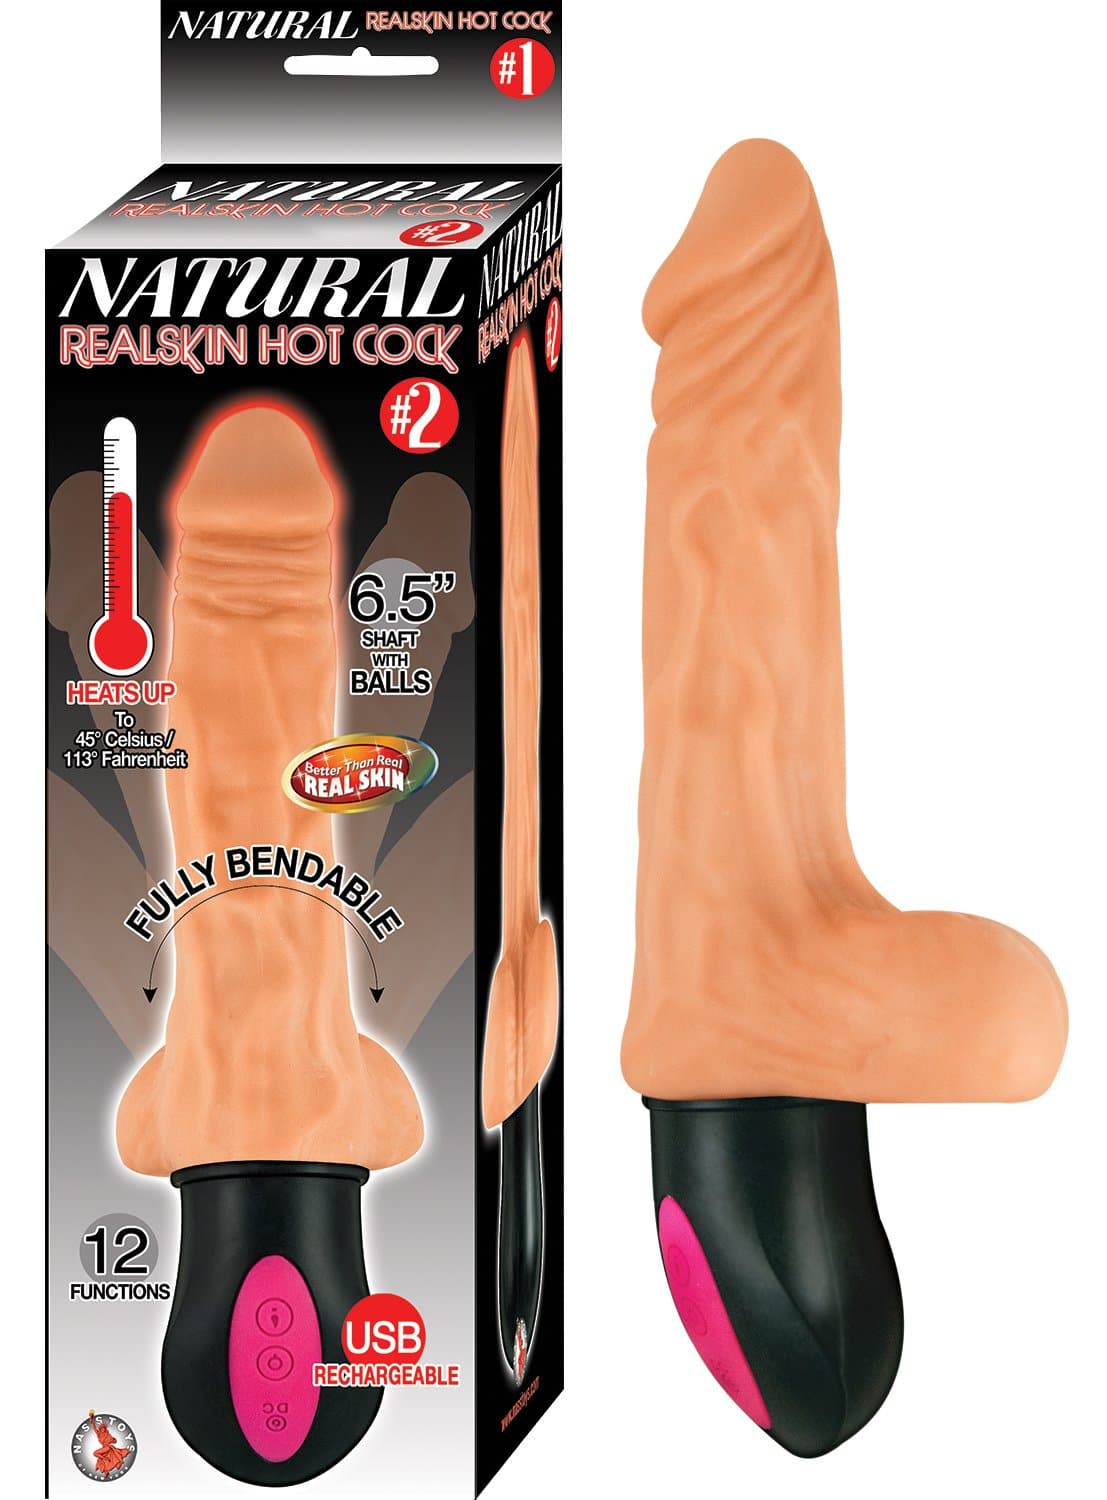 natural realskin hot cock 2 flesh